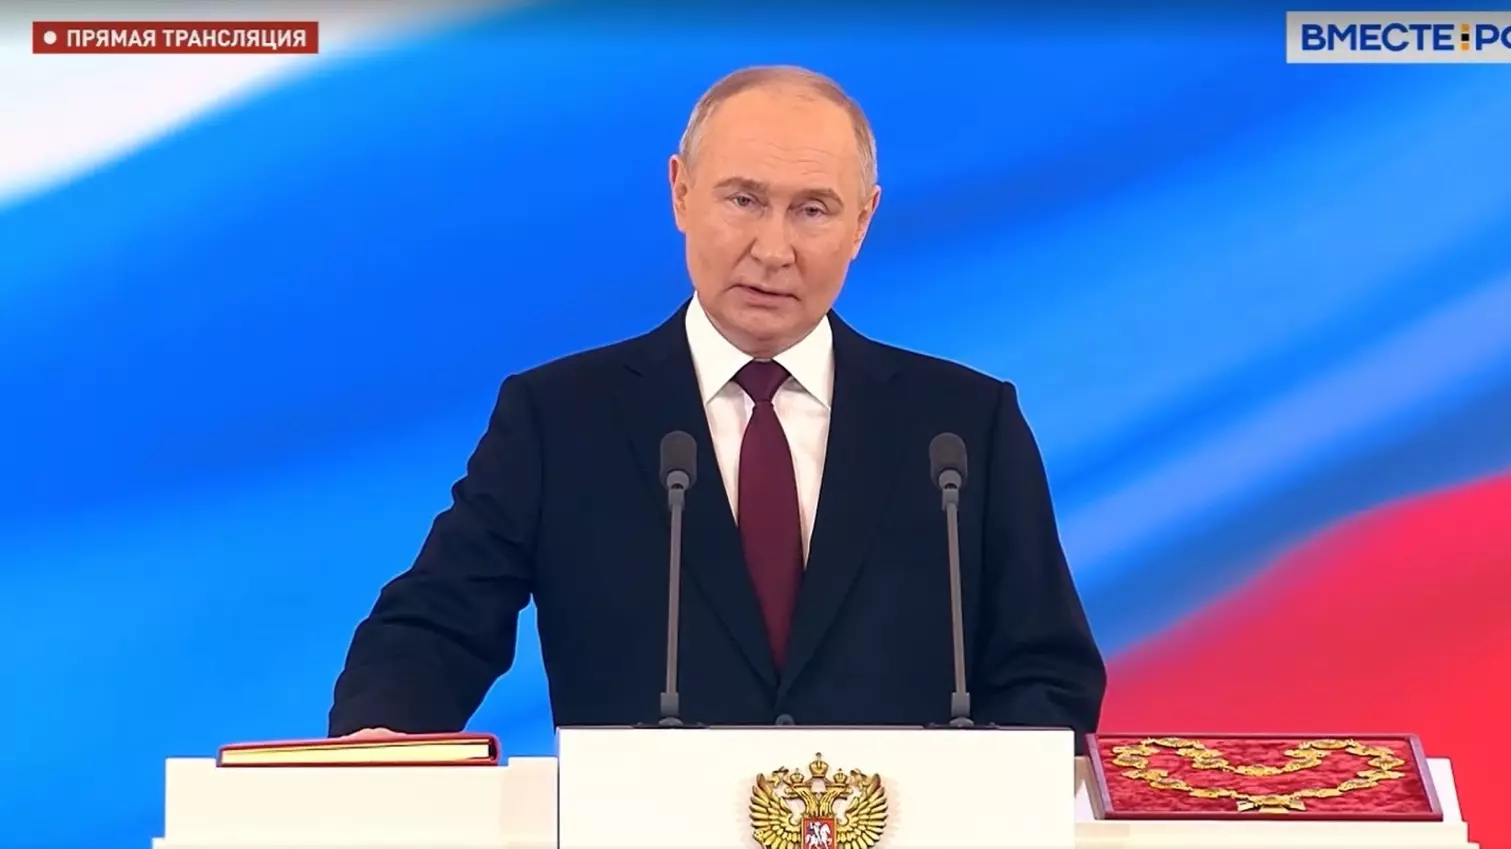 Владимир Путин официально вступил в должность президента Российской Федерации